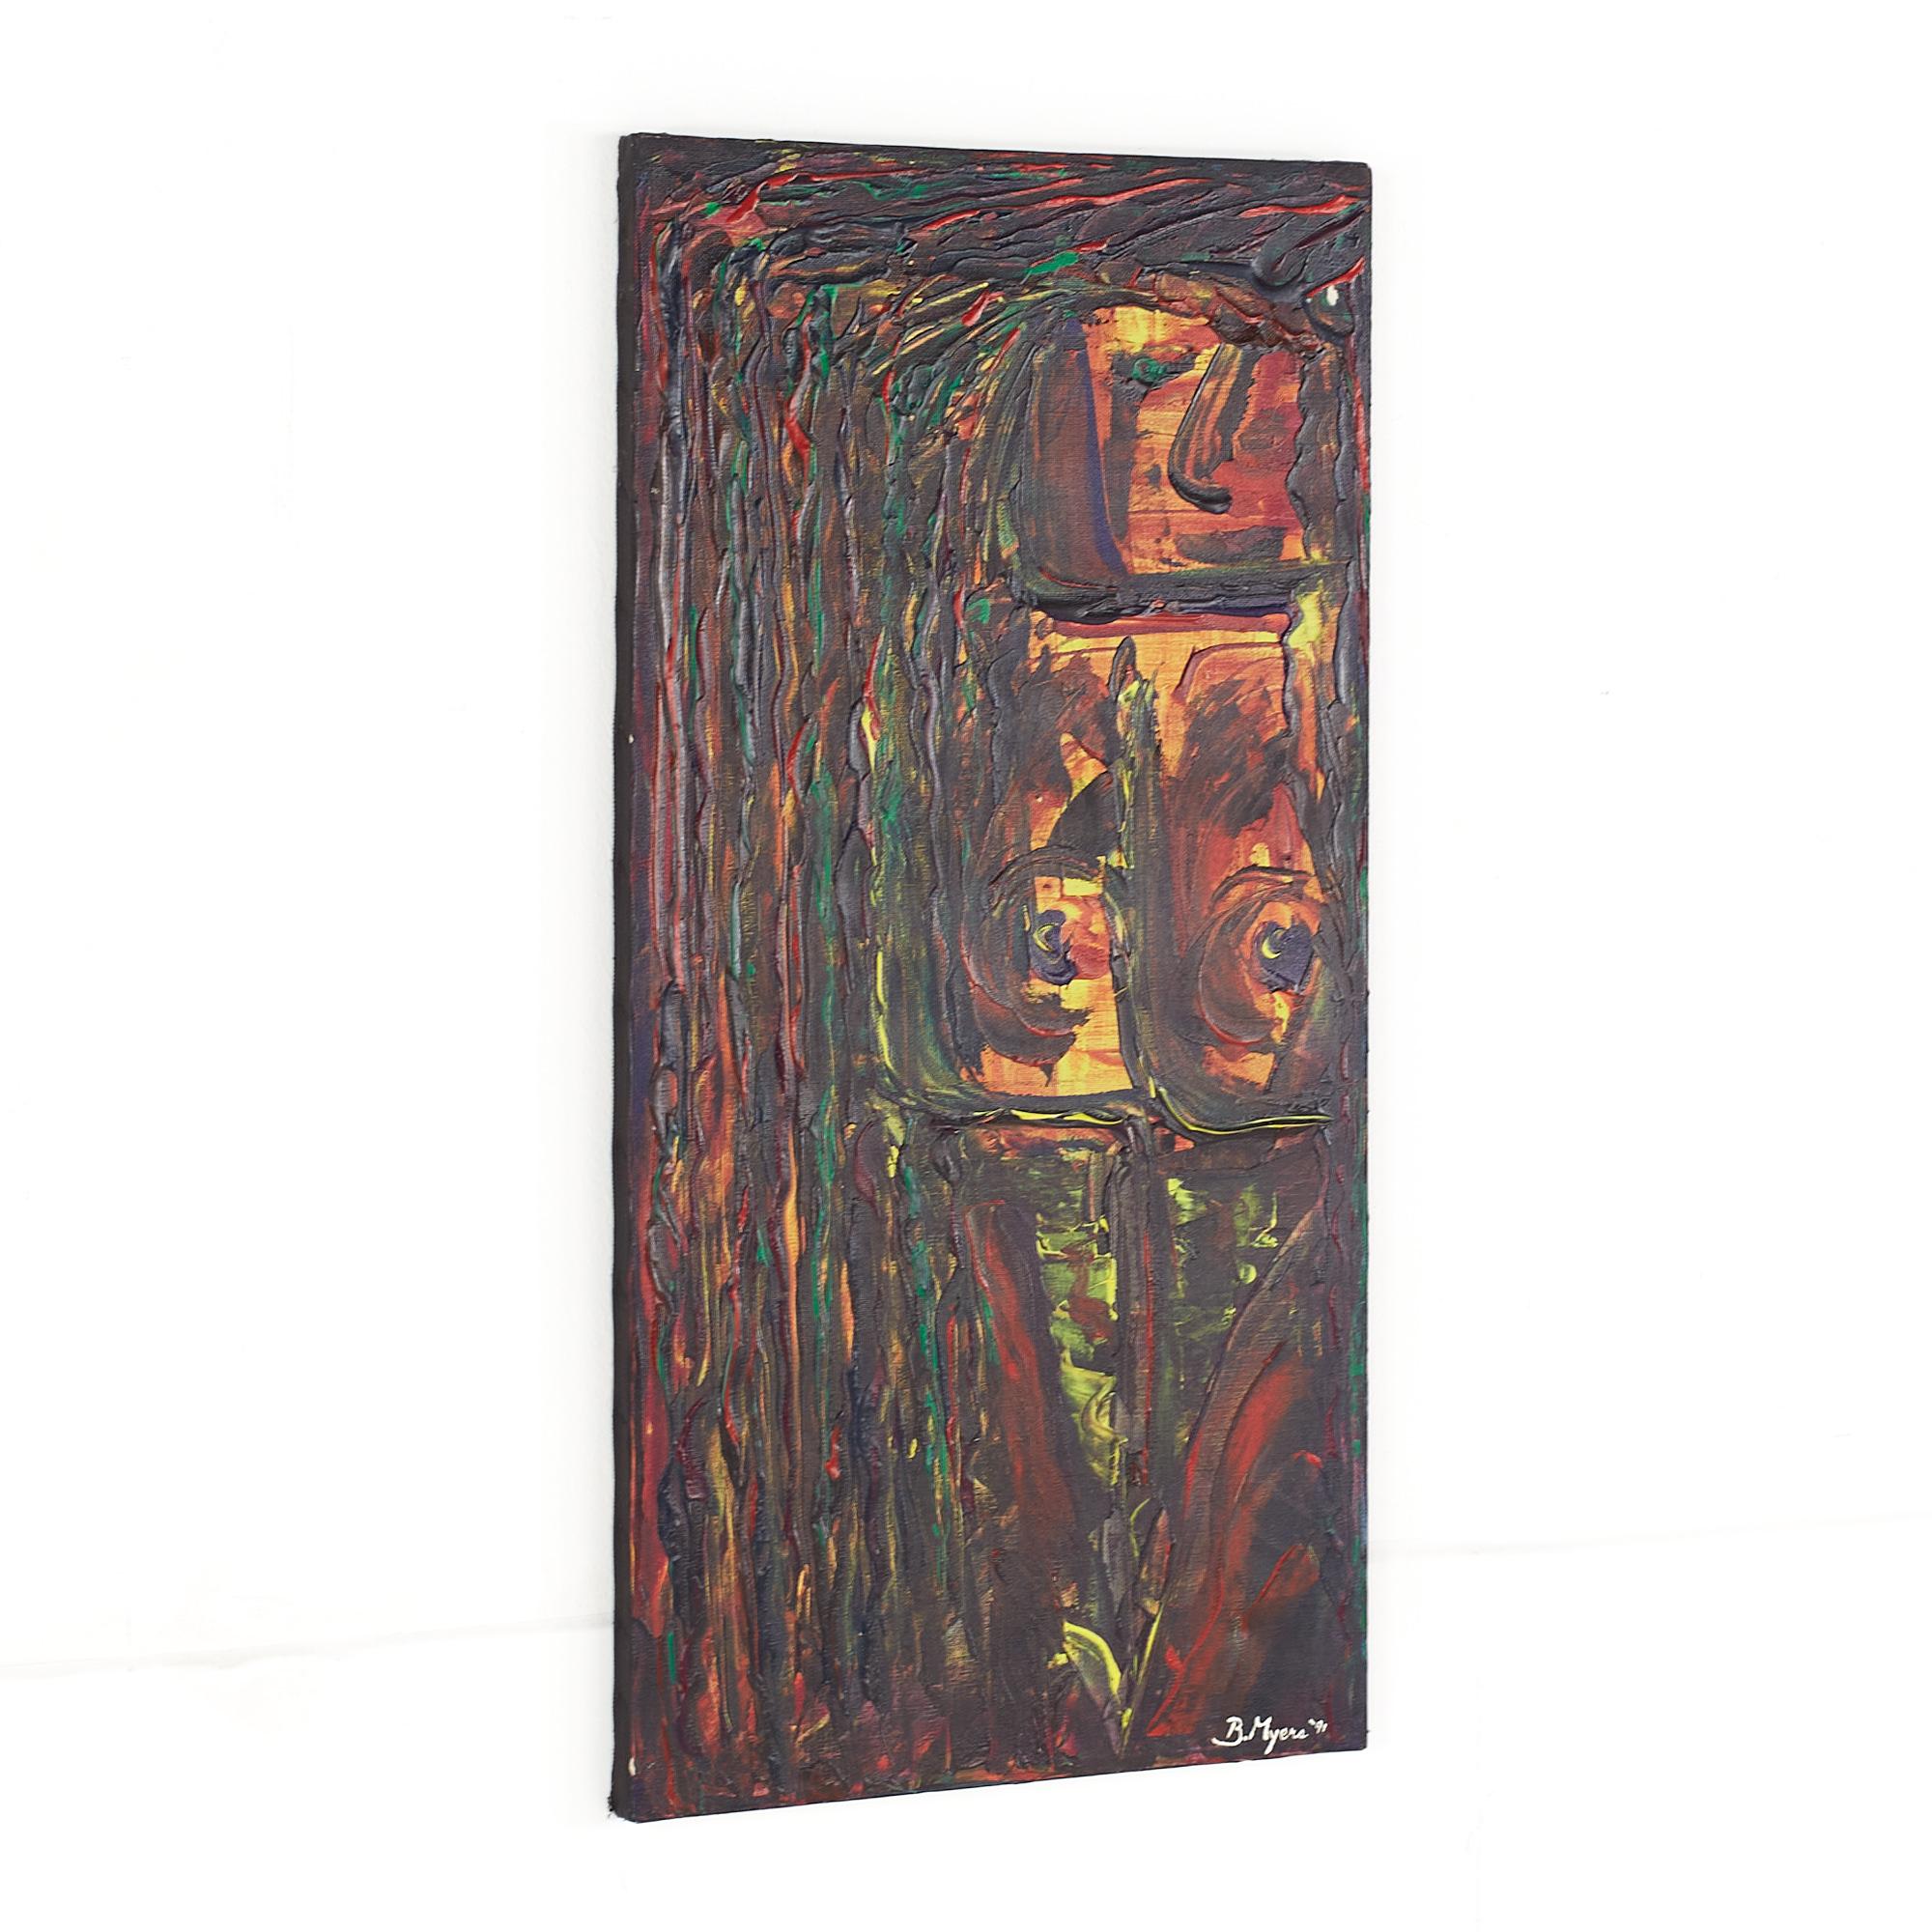 Huile sur toile originale abstraite signée Bruce Myers, datant du milieu du siècle dernier.

Cette peinture mesure : 15 pouces de largeur x 0,75 pouce de profondeur x 30 pouces de hauteur.

Cette peinture est en bonne condition vintage.

Nous